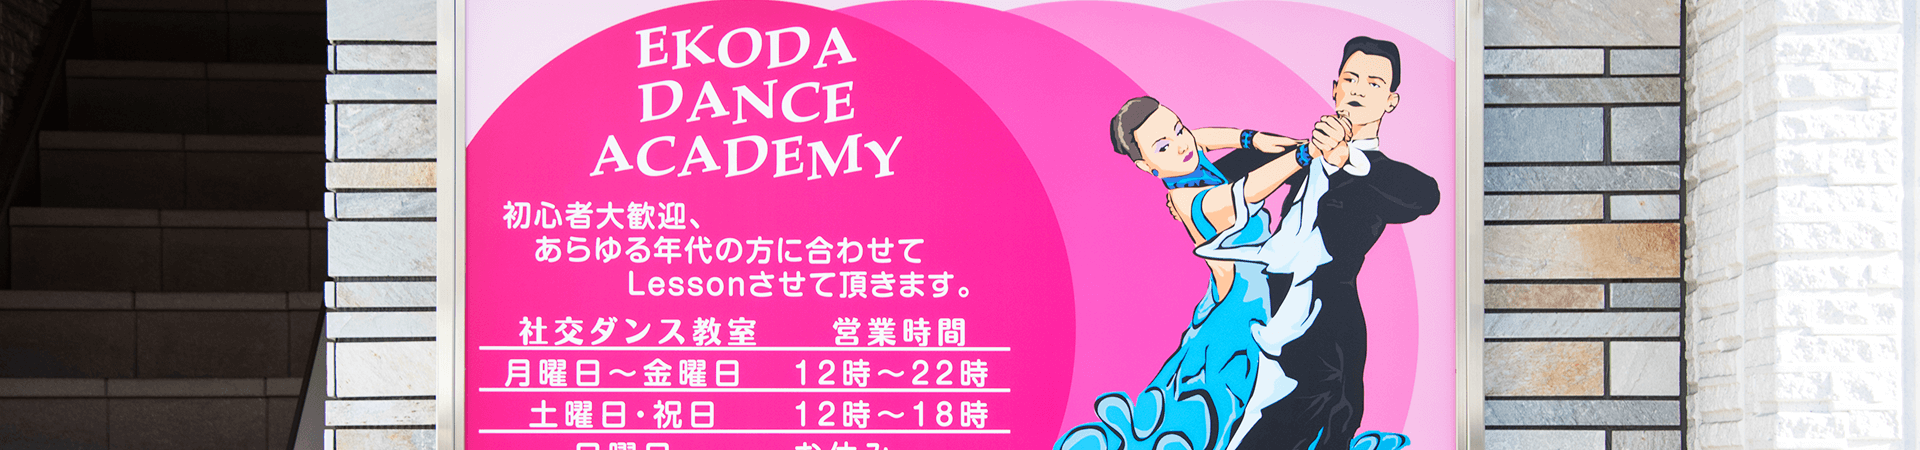 Ekoda Dance Academy